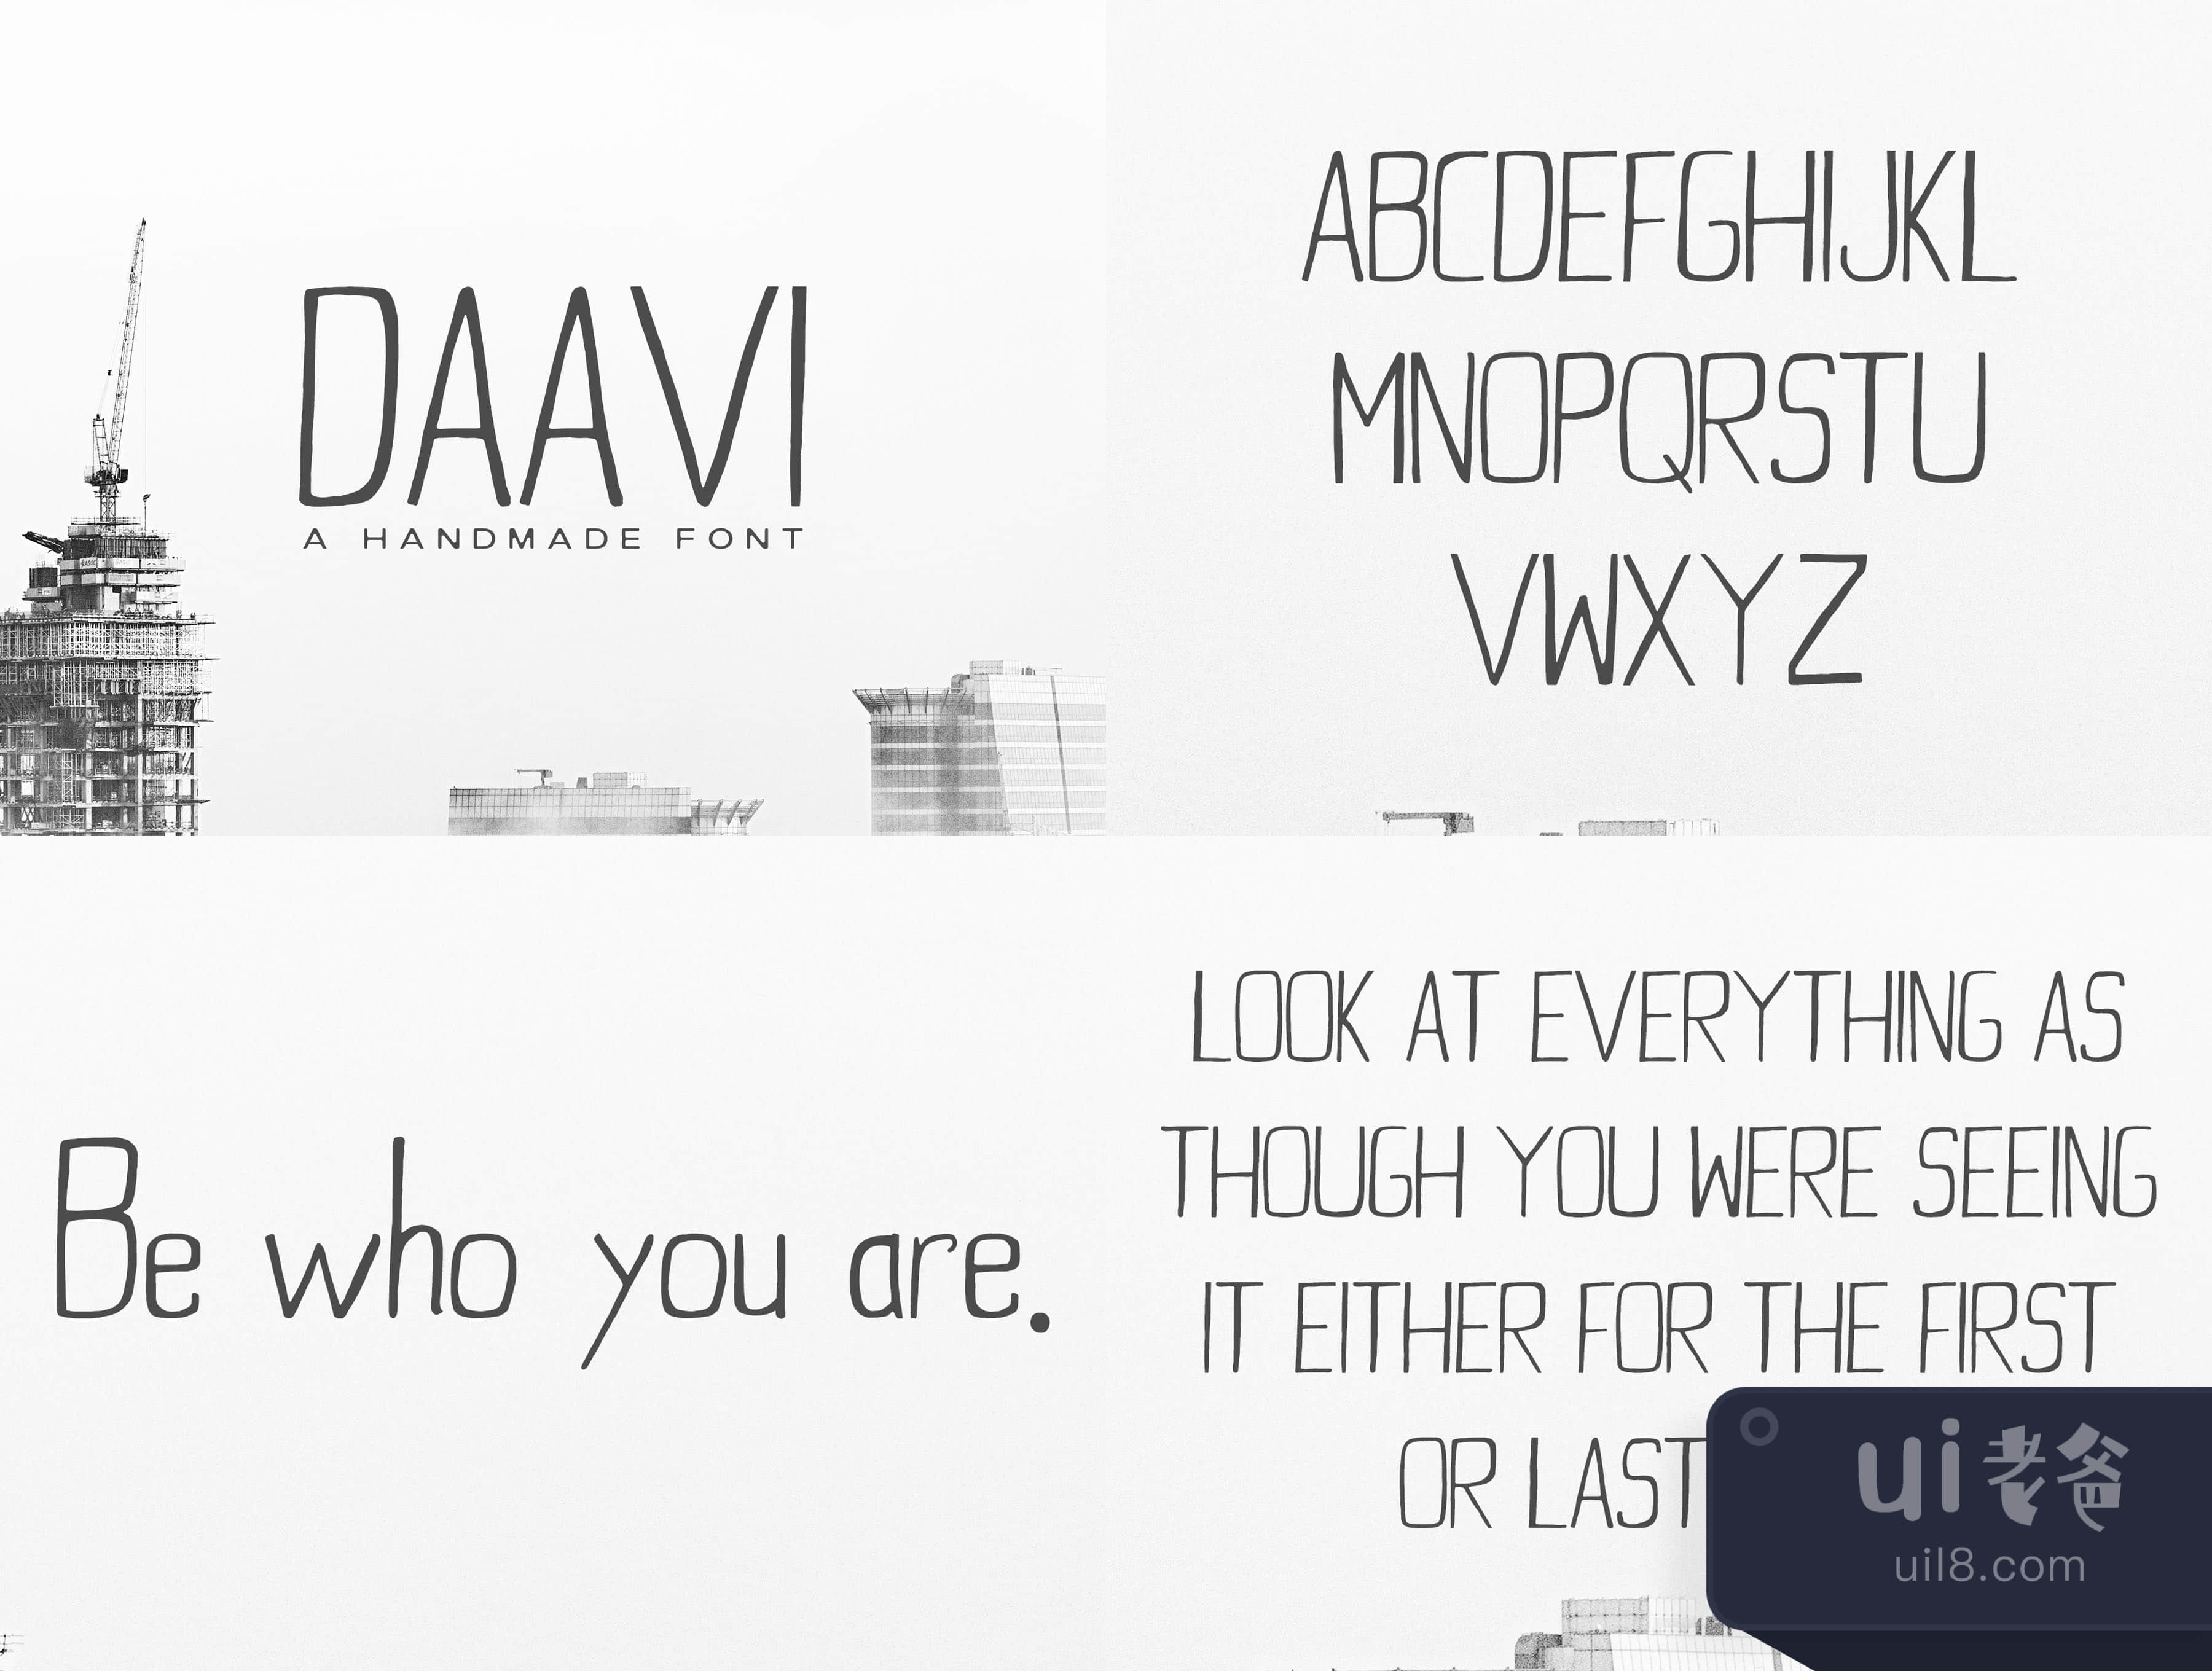 达维无衬线字体 (Daavi Sans Serif)插图